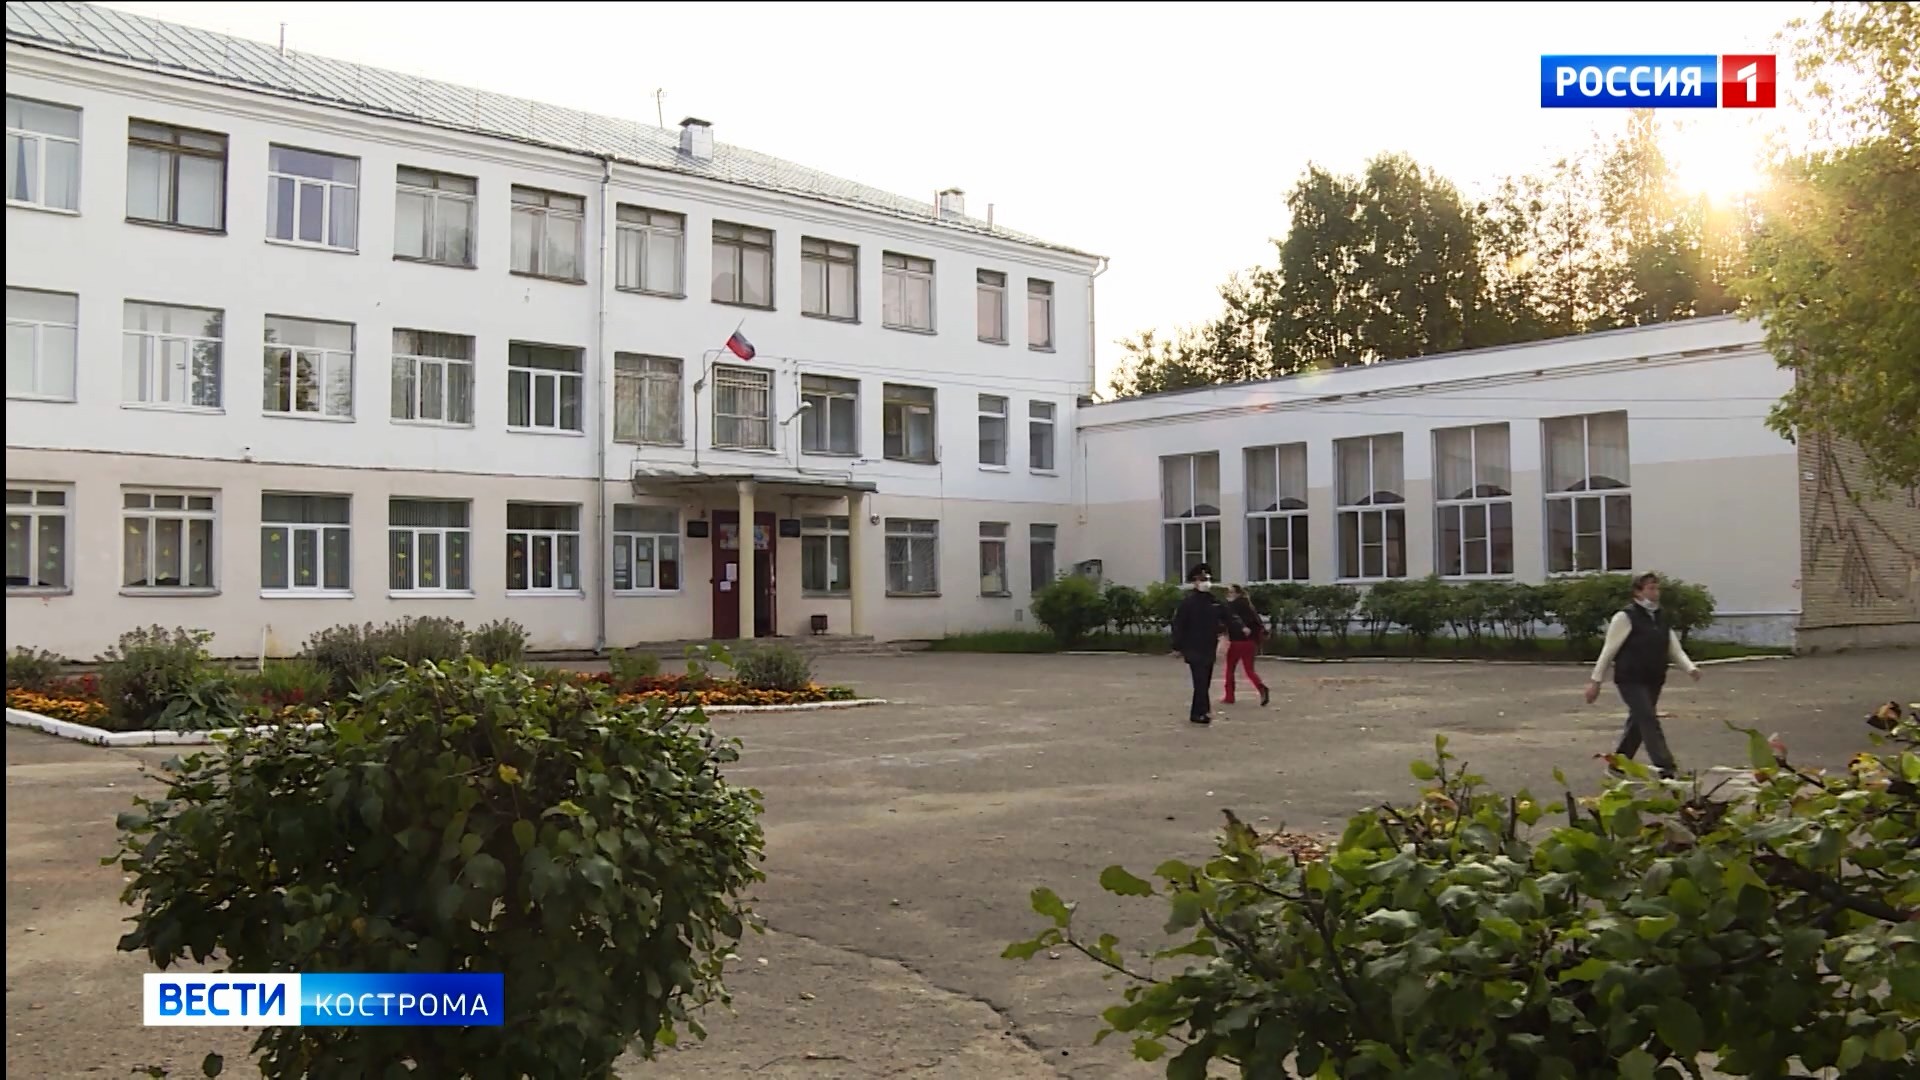 Избирательный участок по адресу найти кострома. Владикавказ избирательный участок 42 школа фото.